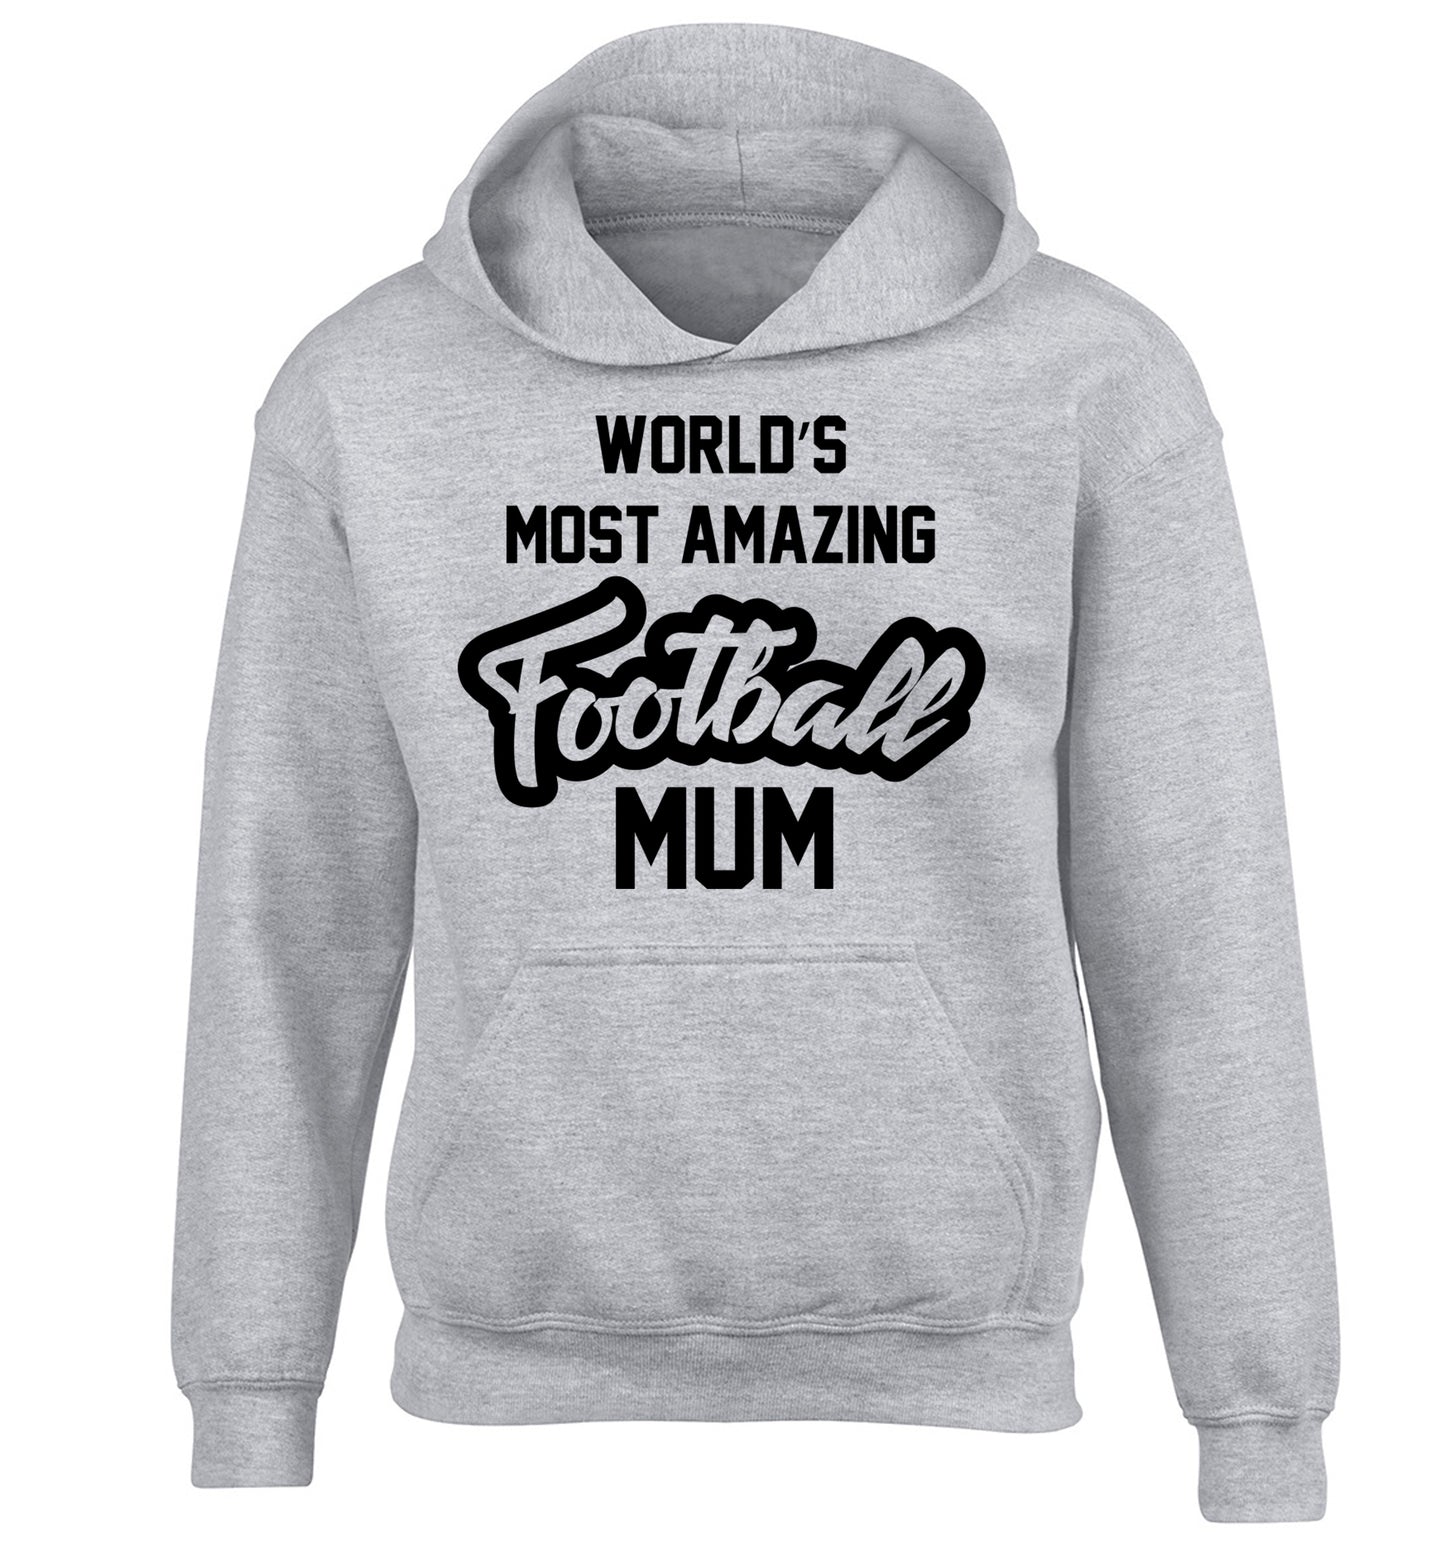 Worlds most amazing football mum children's grey hoodie 12-14 Years